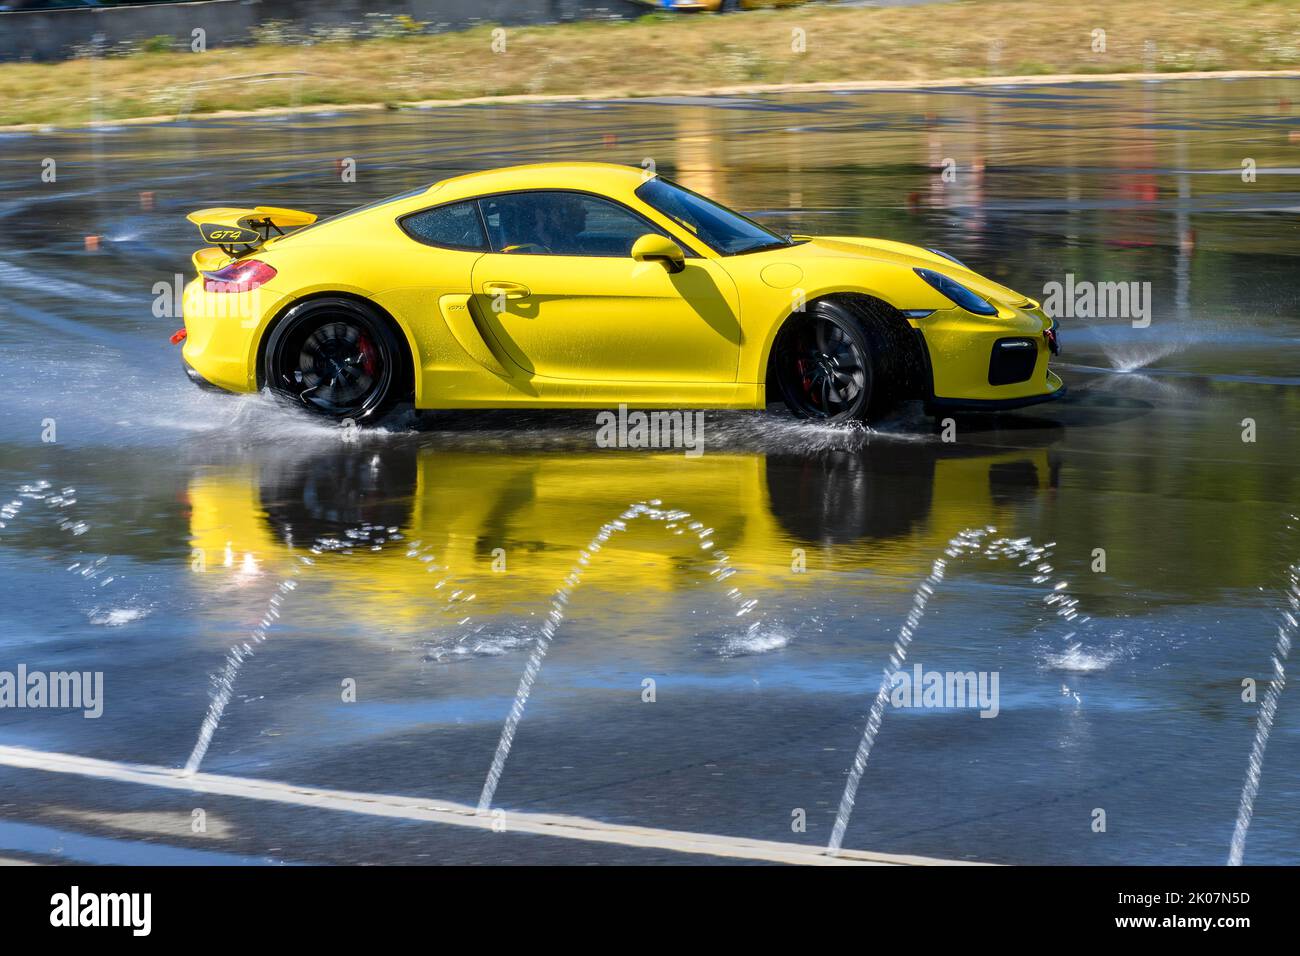 Sportwagen-Rennwagen Porsche Cayman GT4 auf Regenbahn Driften Driften über nassen Asphalt während des Fahrsicherheitstrainings, im Vordergrund Wasser Stockfoto